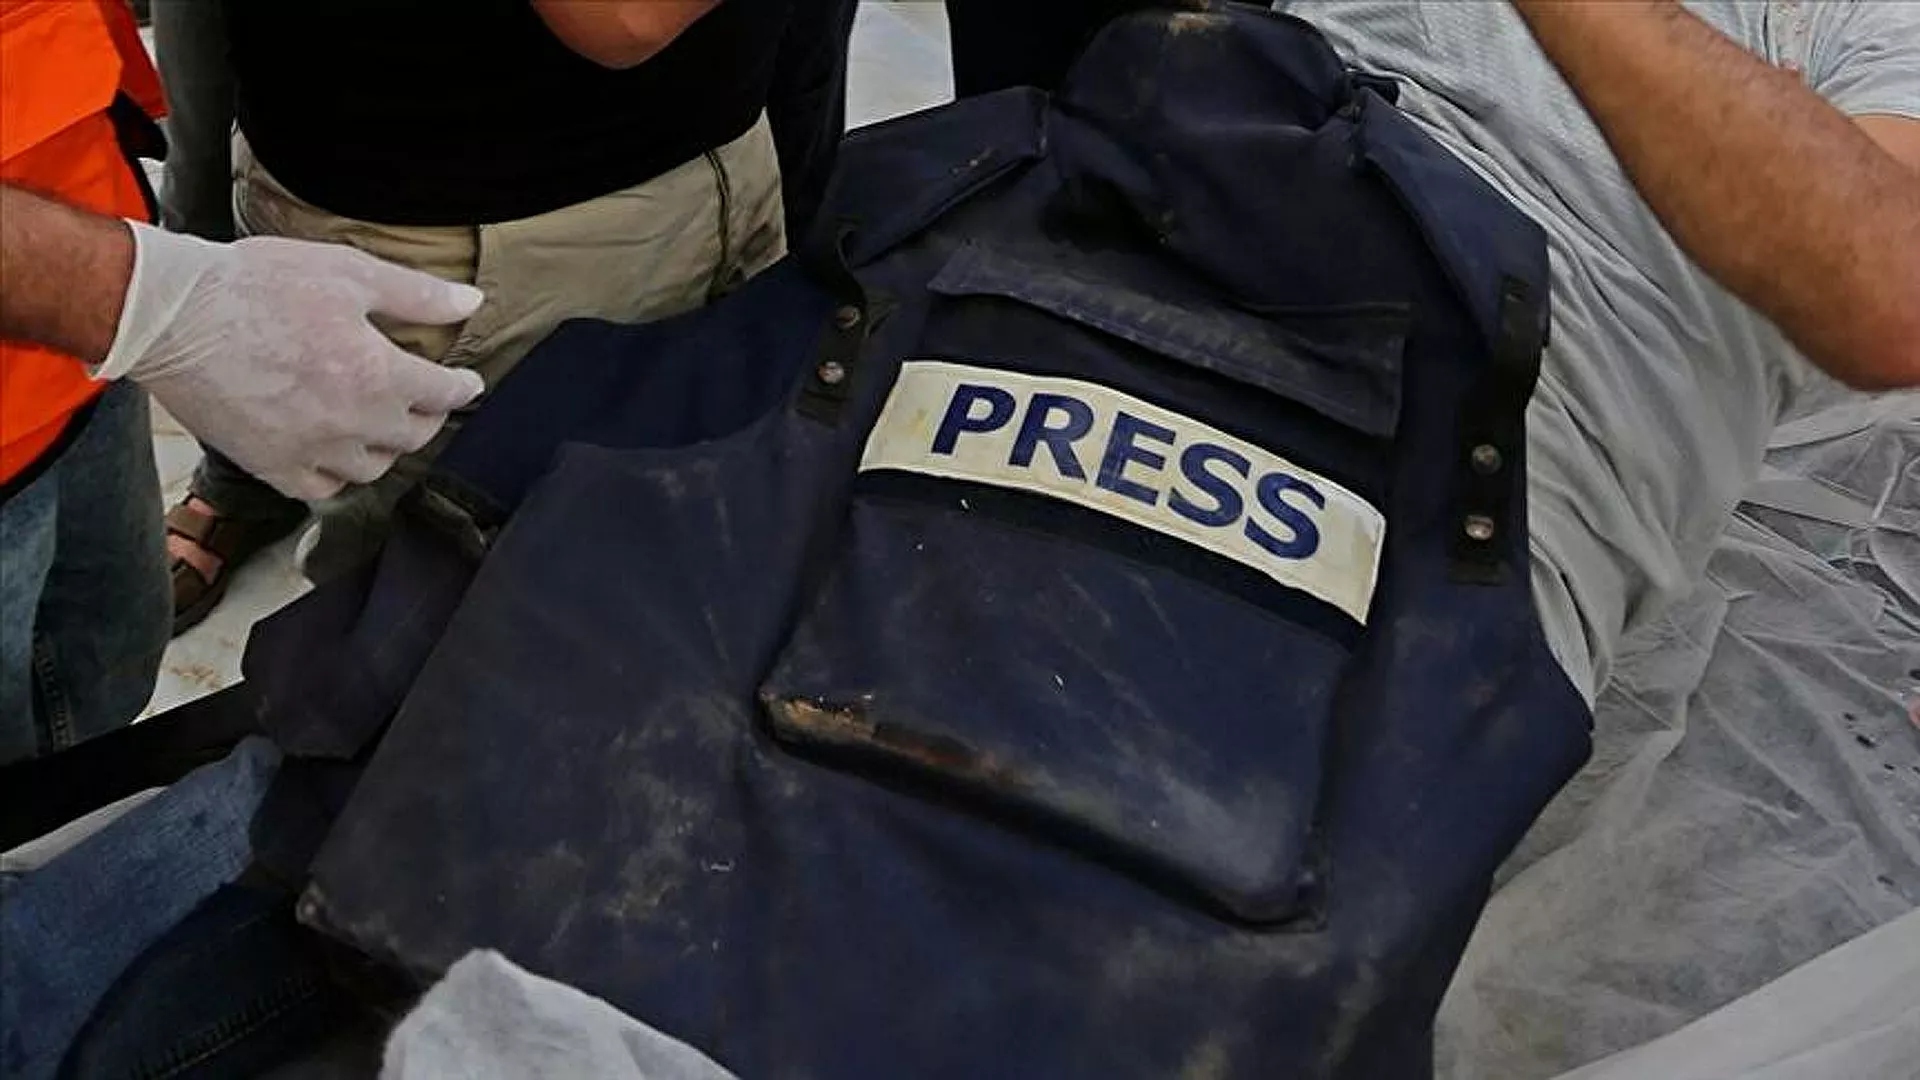 Yemen'de kadın gazeteciye bombalı suikast